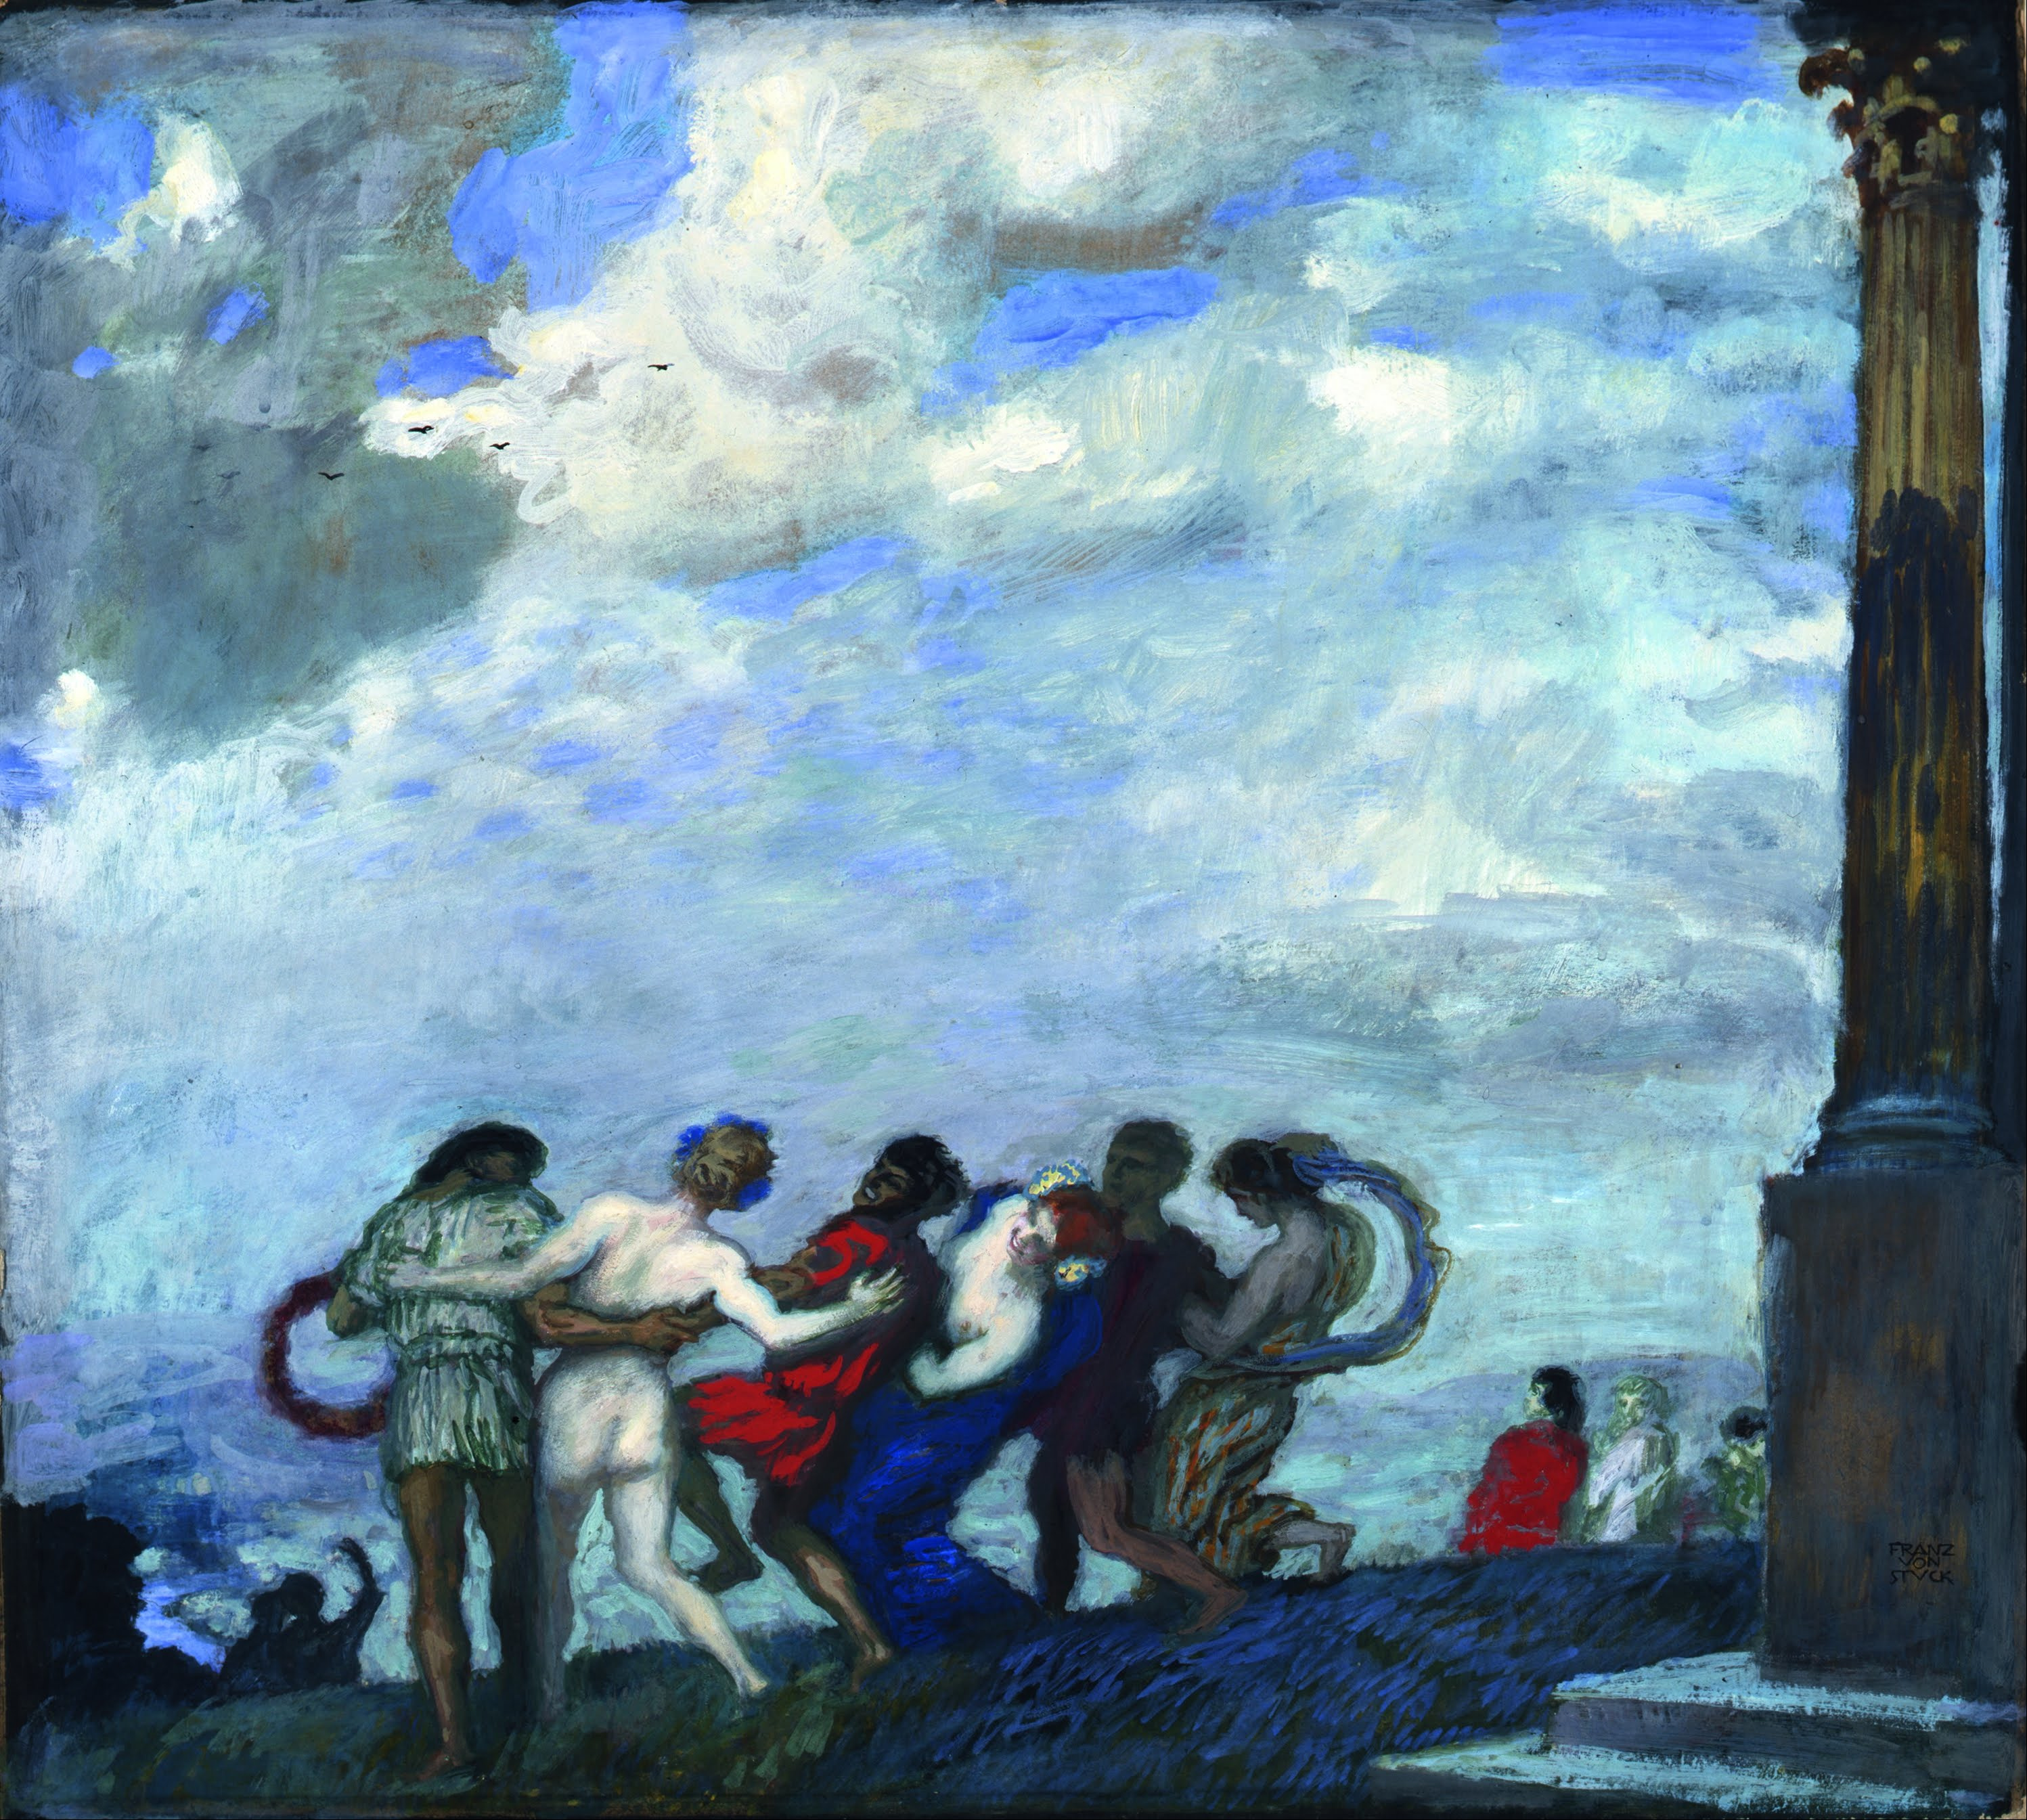 Dansul by Franz von Stuck - 1910 - 79.5 x 71 cm 